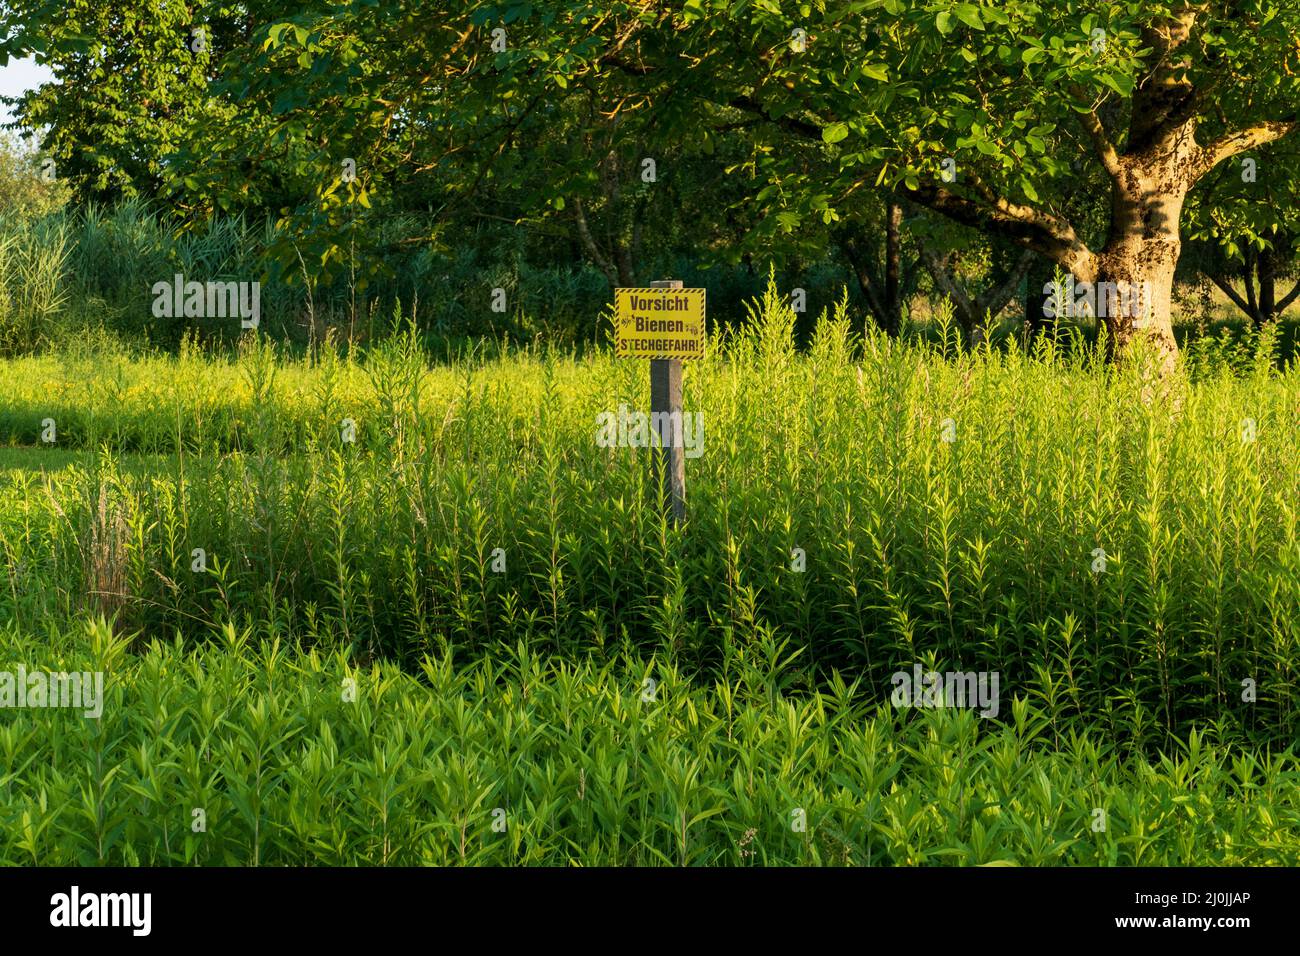 Schild mit dem Text 'Vorsicht Bienen Stechgefahr' an einer Wild Wiese Stock Photo